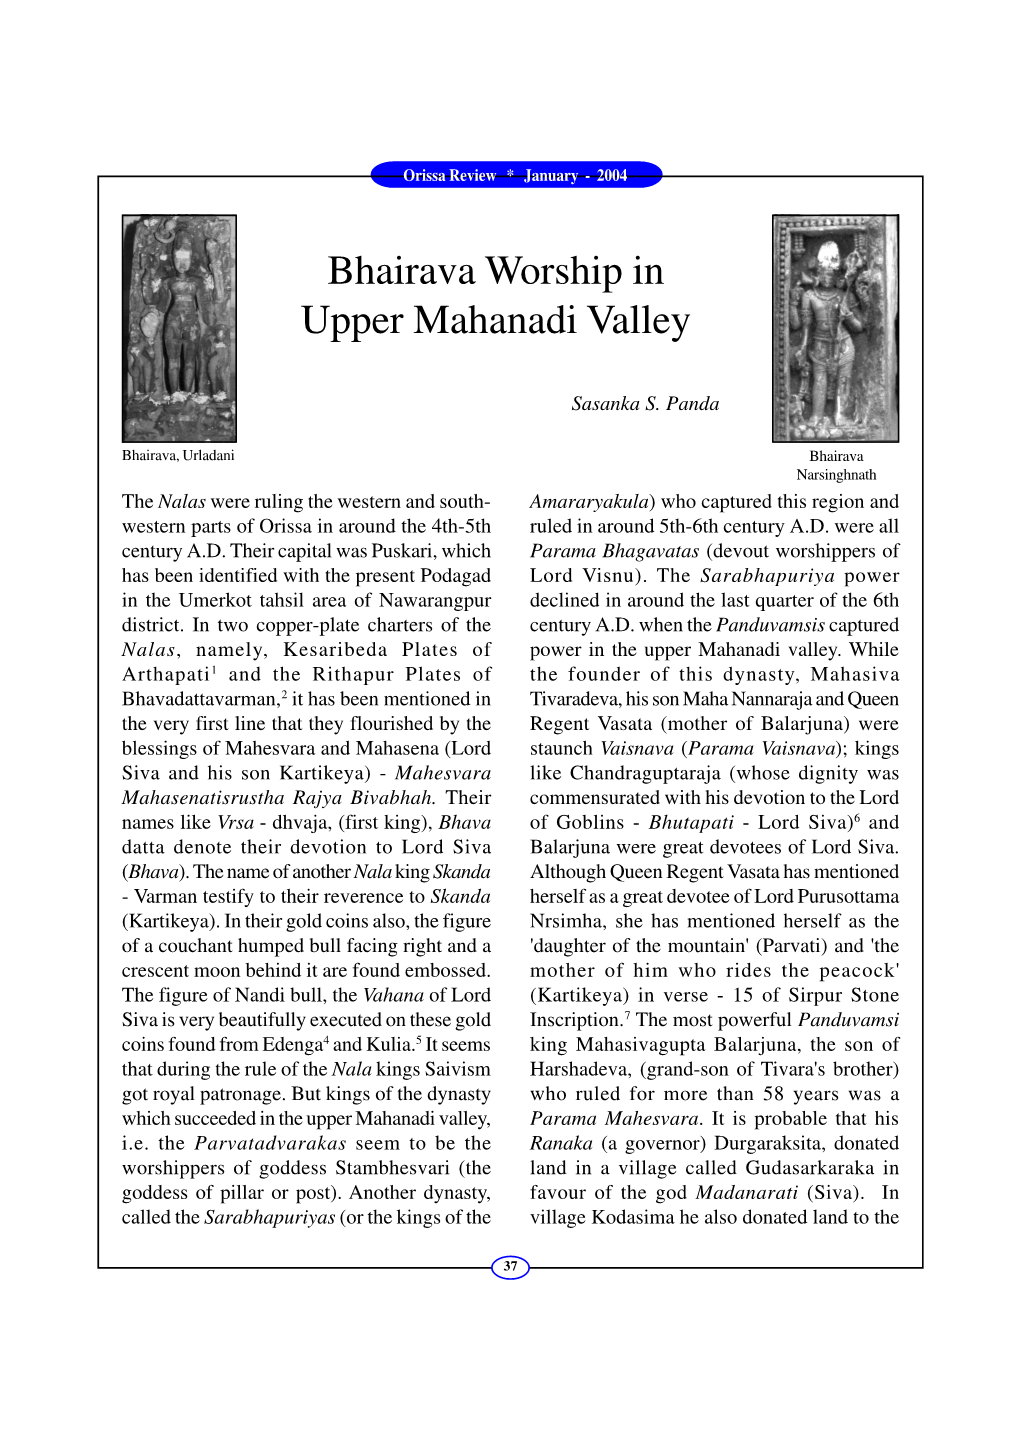 Bhairava Worship in Upper Mahanadi Valley